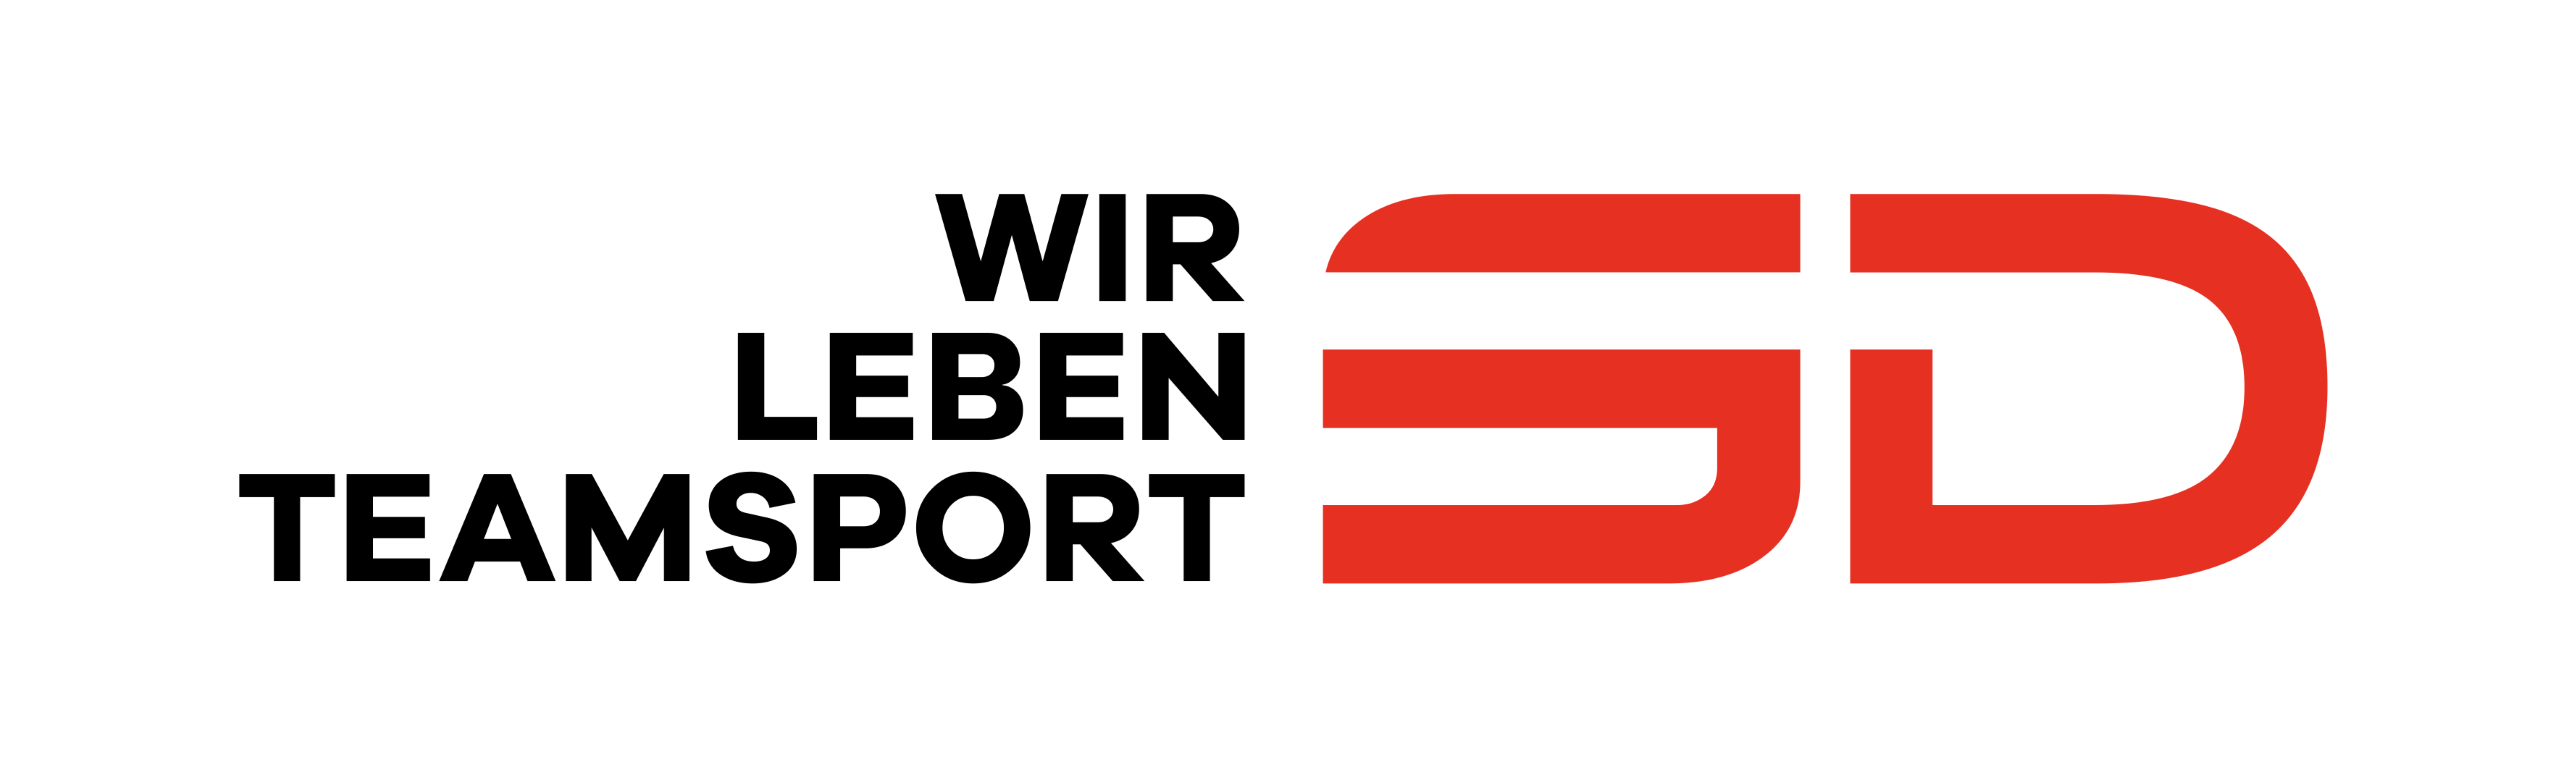 SV Hansa Friesoythe Logo 2